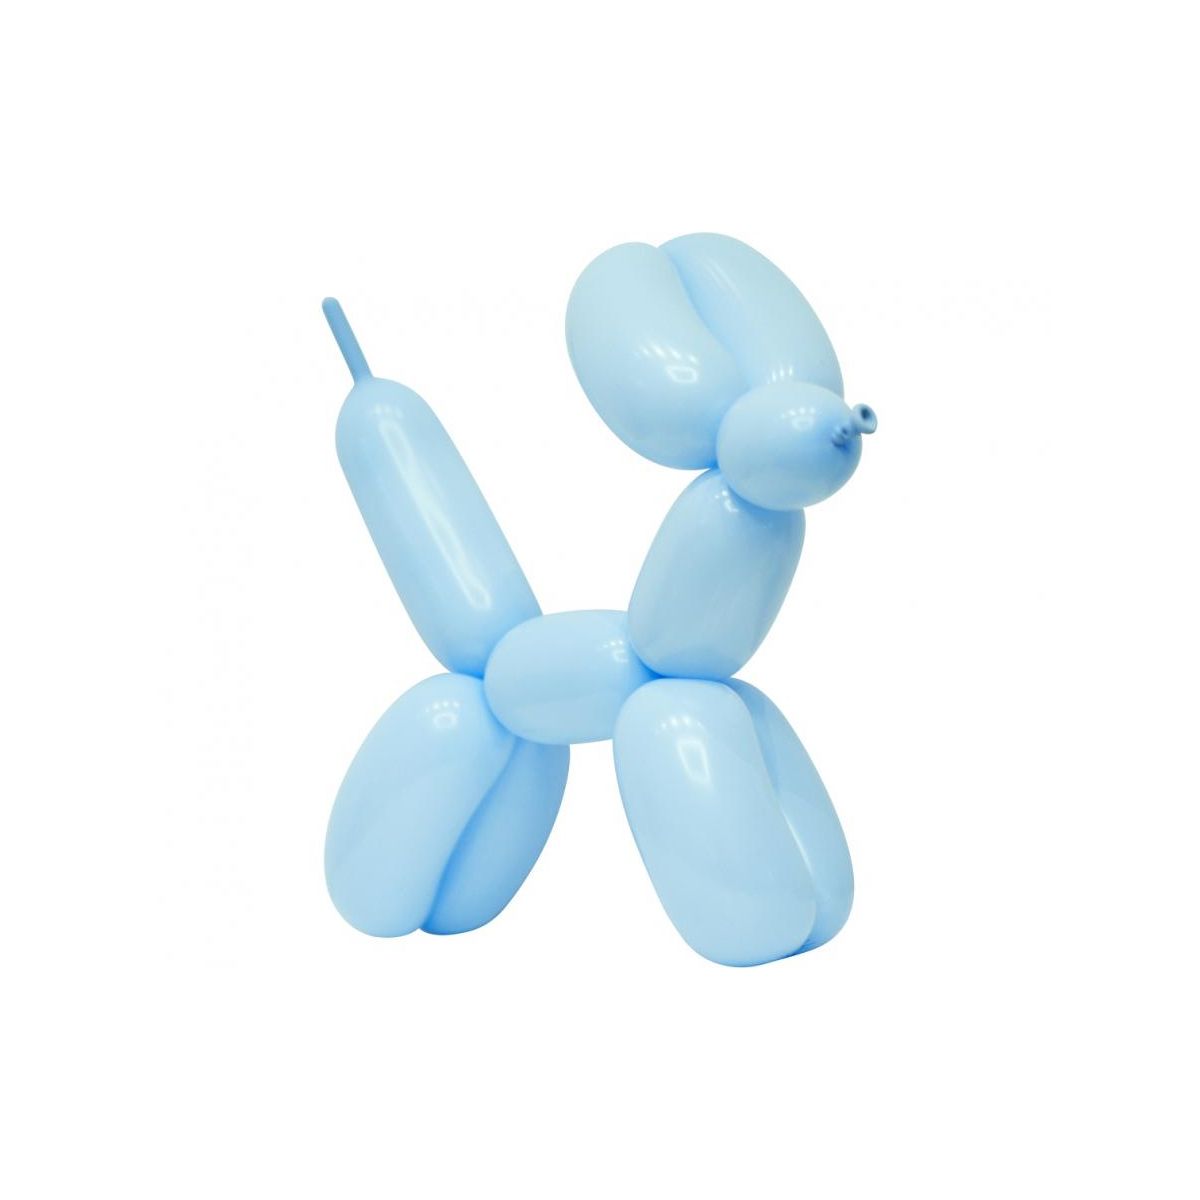 Balon gumowy Godan do modelowania Beauty&Charm, makaronowe j. niebieskie 50 szt. niebieski (CB-MKNI)